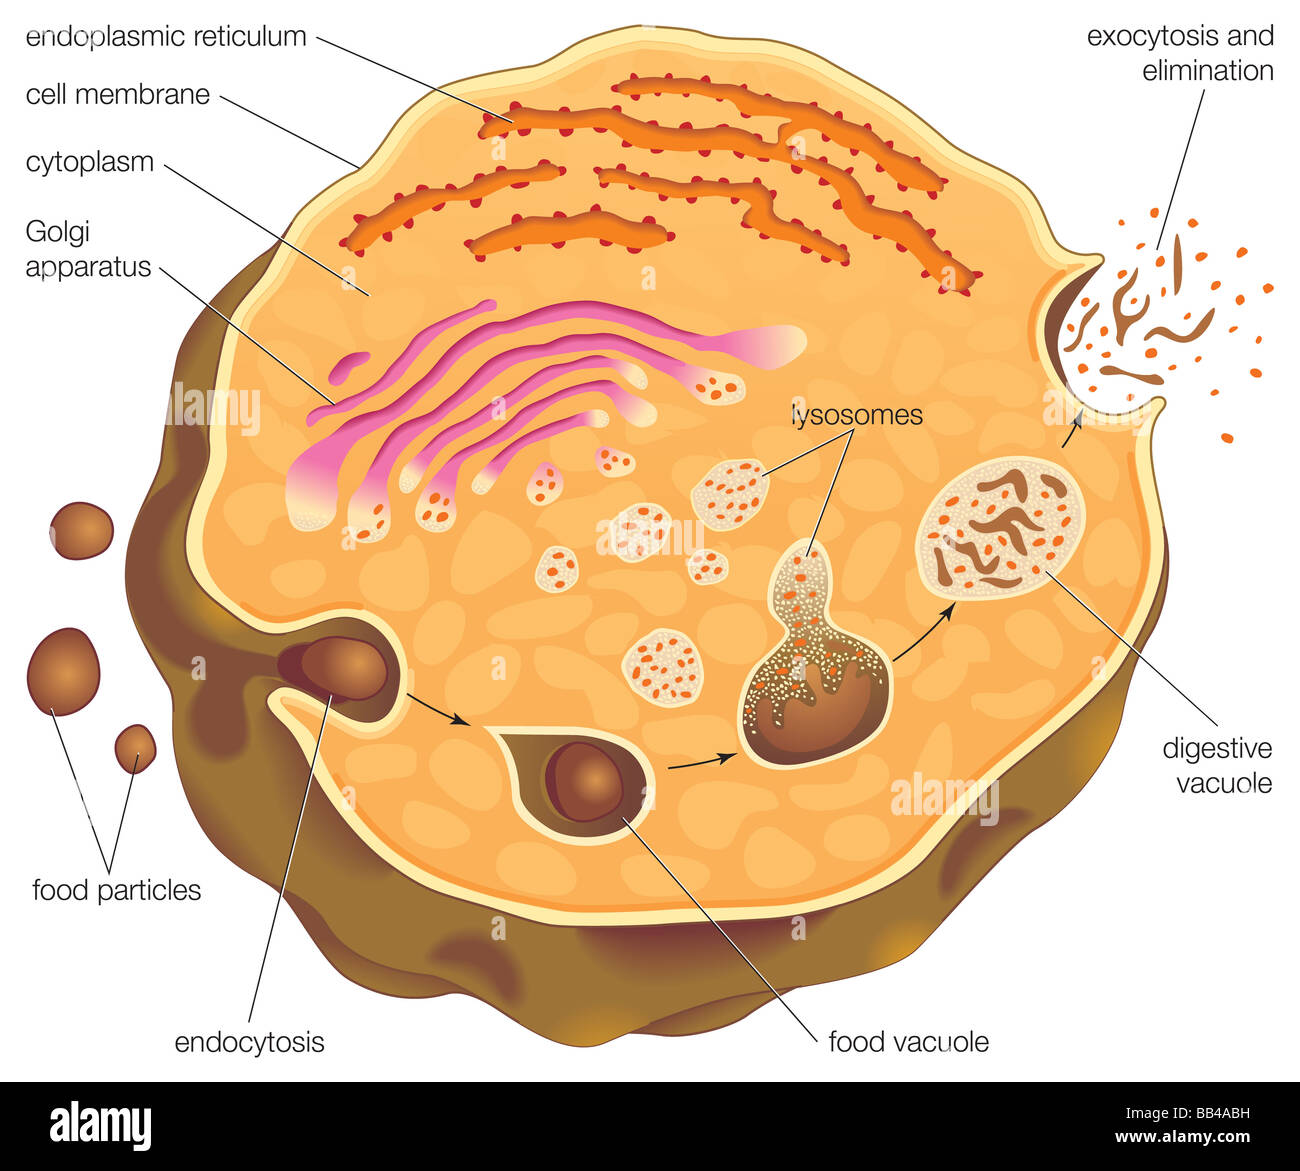 Diagramma che illustra la digestione intracellulare e del ruolo che i lisosomi gioca nella capacità di assorbimento e di espulsione delle particelle di cibo. Foto Stock